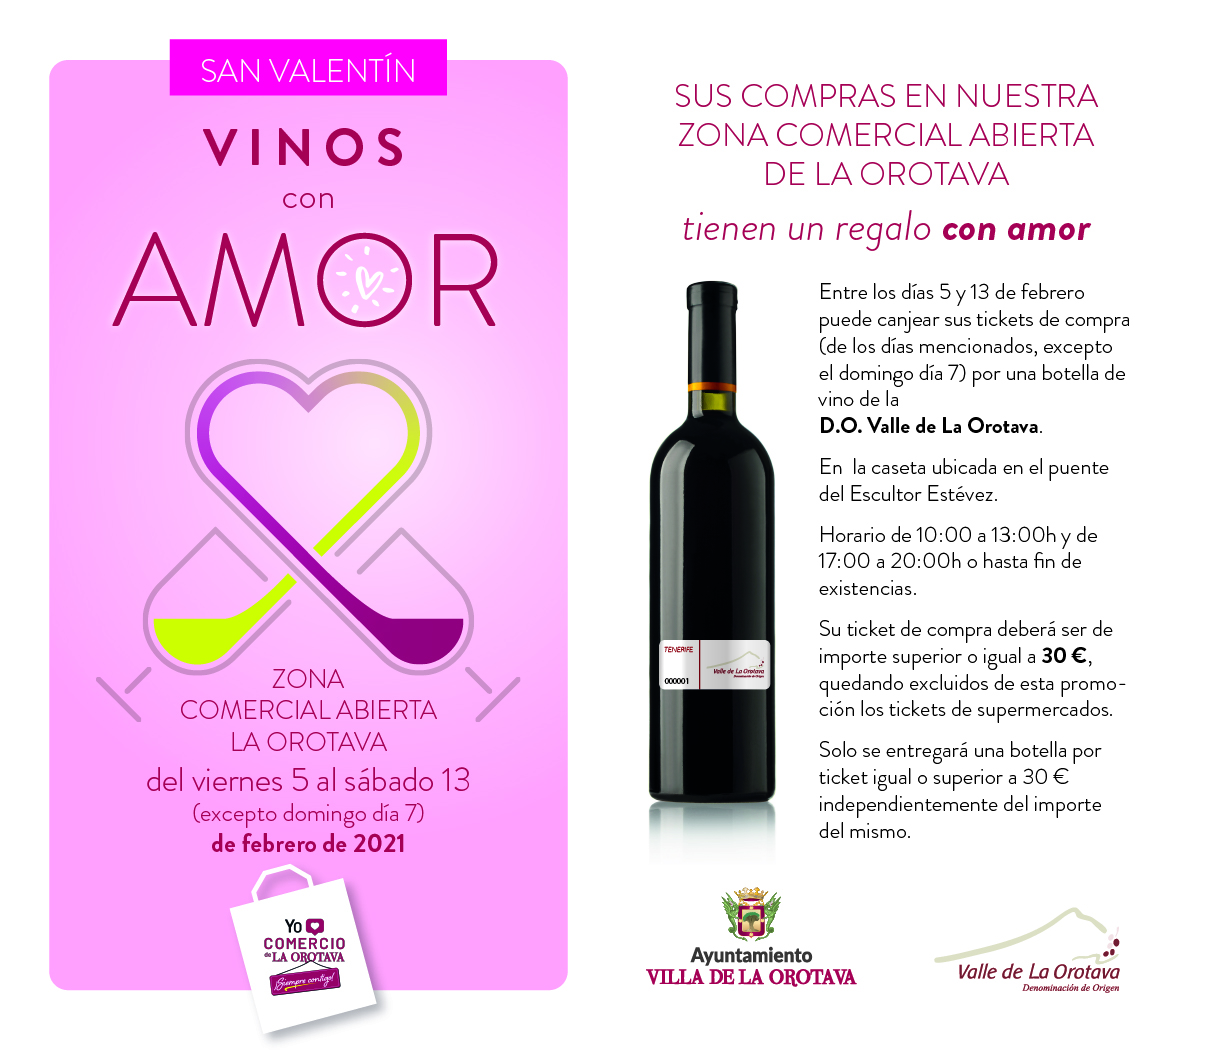 Entre los días 5 y 13 de febrero los tickets de compras podrán ser canjeados por una botella de vino de la Denominación de Origen Valle de La Orotava